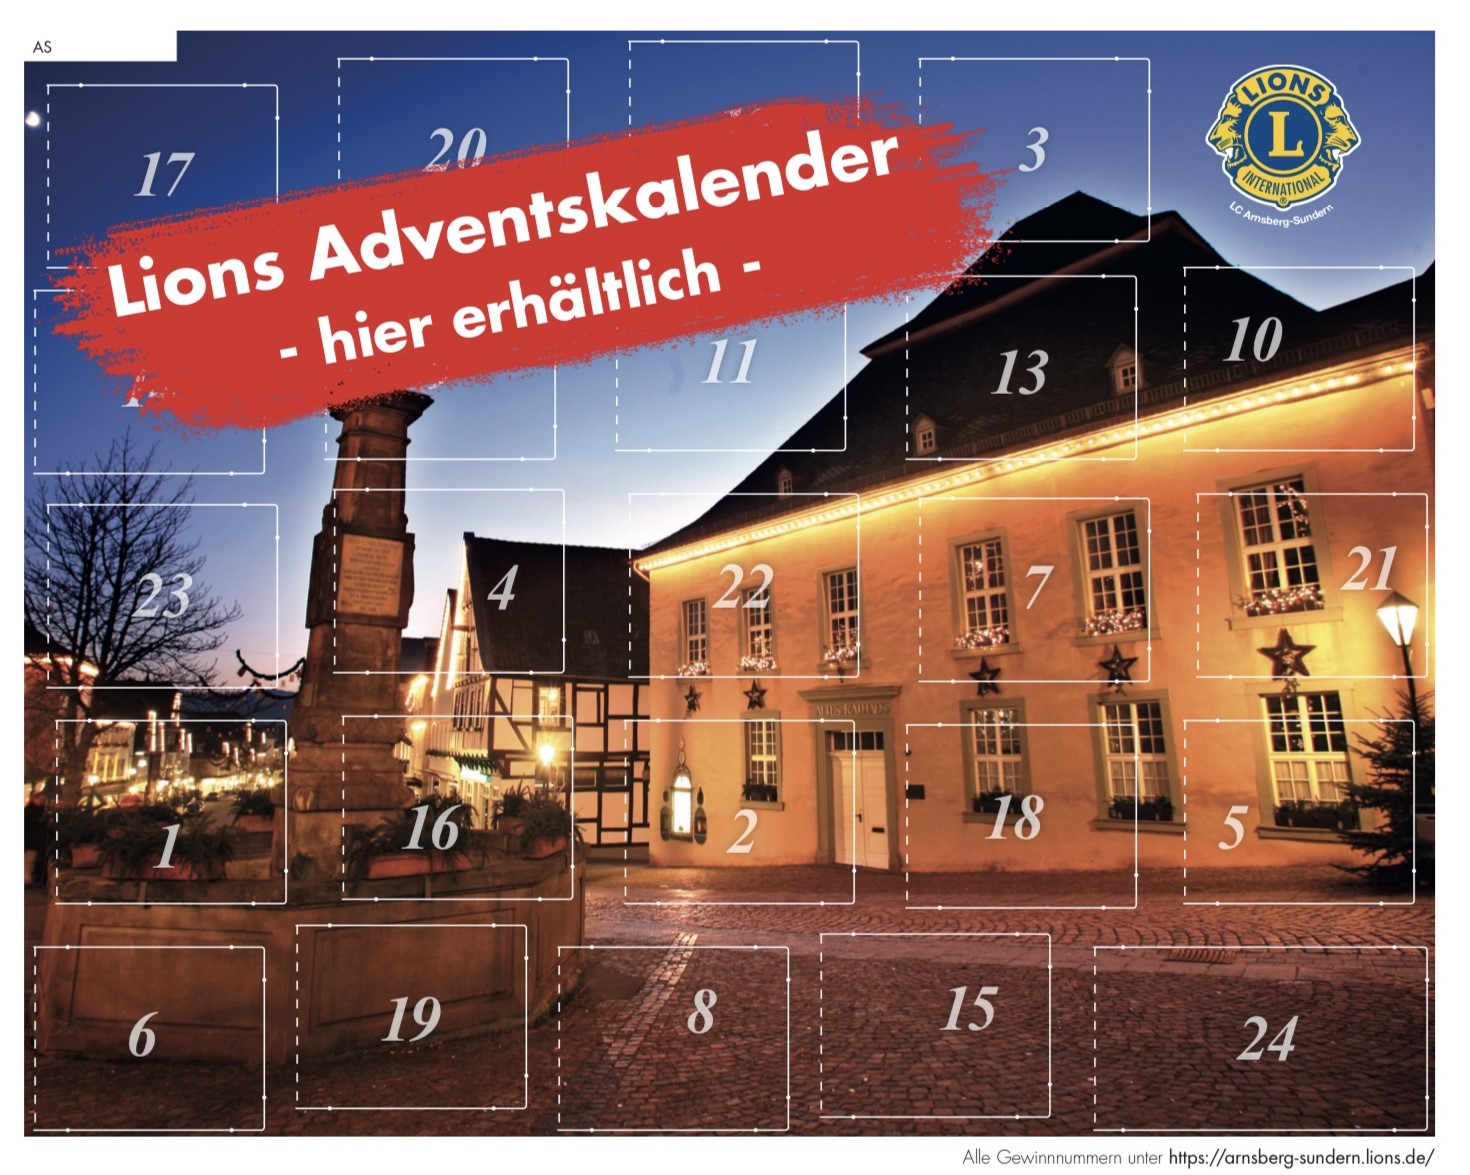 Das Kalenderbild wurde vom Verkehrsverein Arnsberg zur Verfügung gestellt, von Herrn Julian Stratenschulte aufgenommen und zeigt das Arnsberger Rathaus und den Maximilianbrunnen.